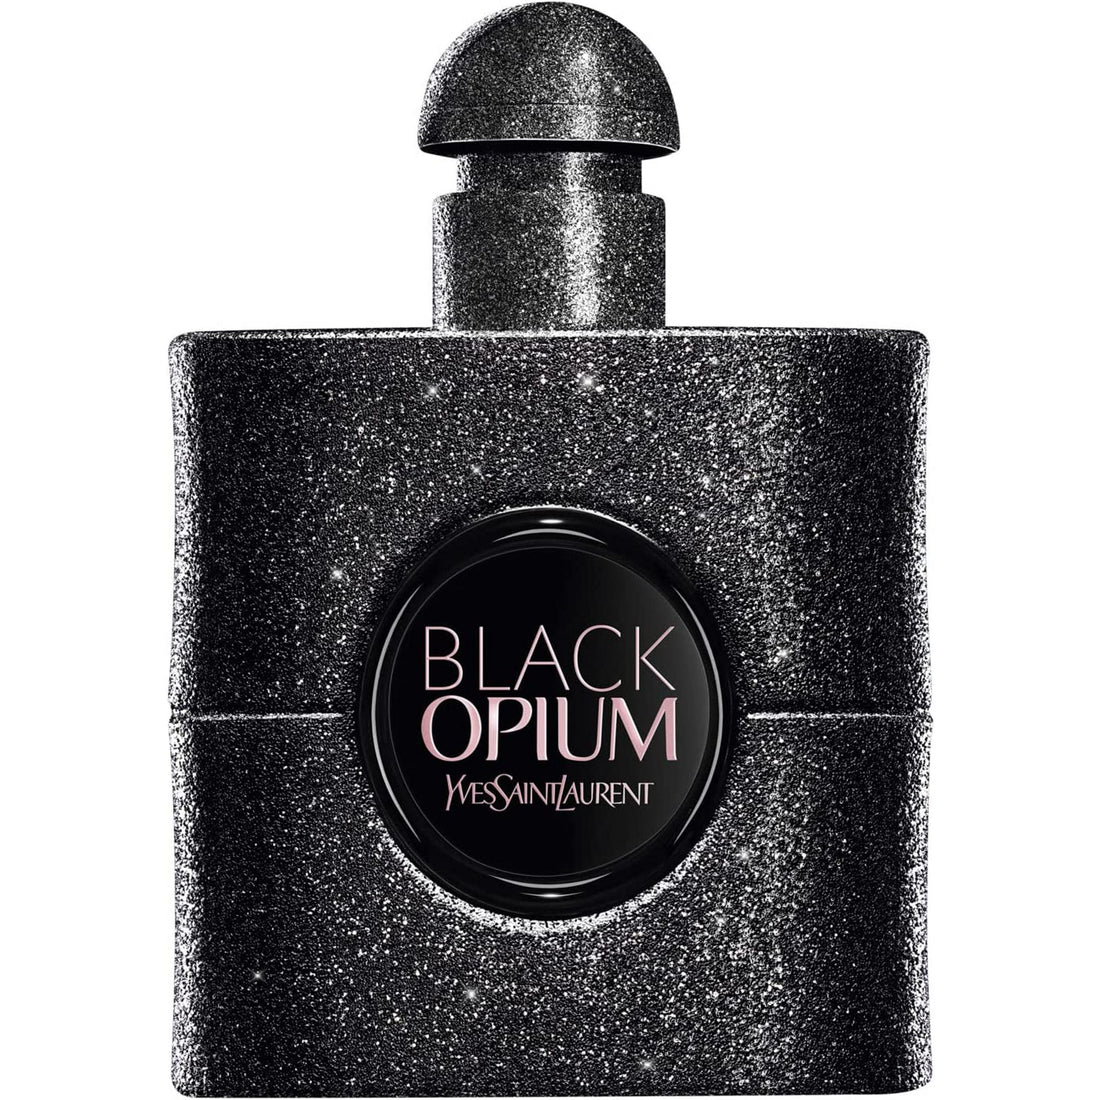 Yves Saint Laurent Black Opium Extreme For Her Eau de Parfum